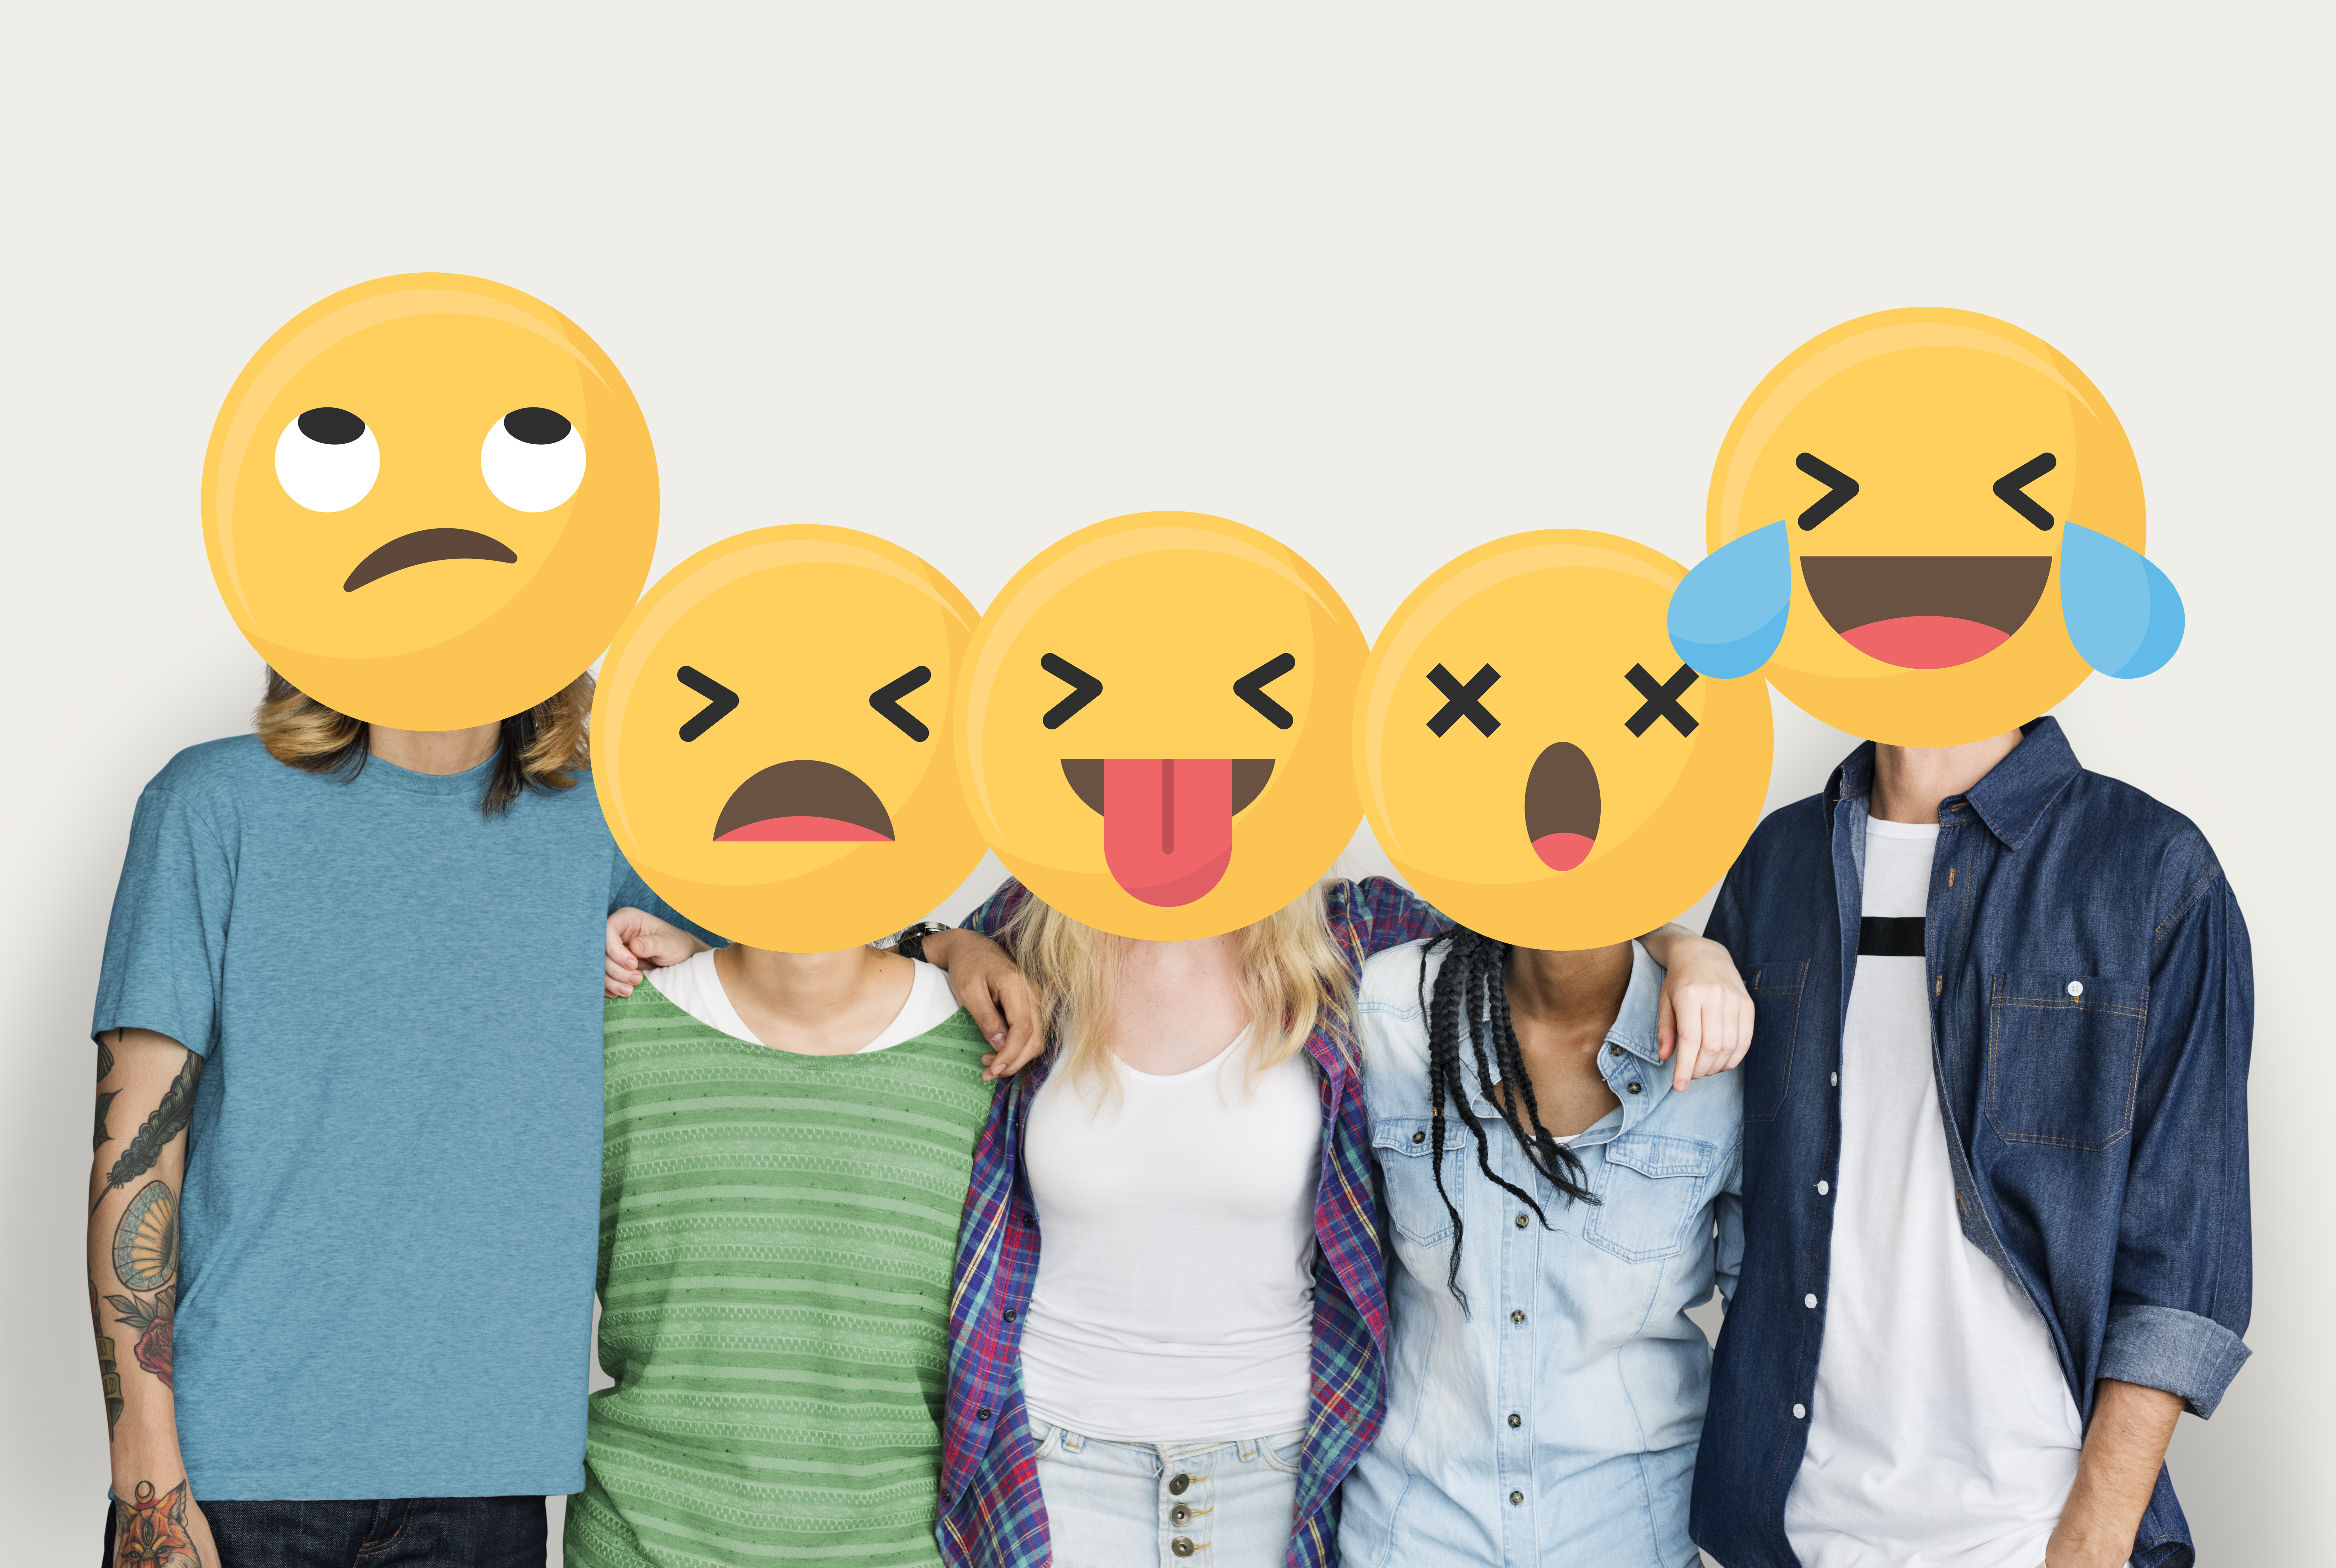 En la imagen se ve a un grupo de cinco personas cogidos unos de otros. Sus caras están tapadas por emojis con diferentes emociones